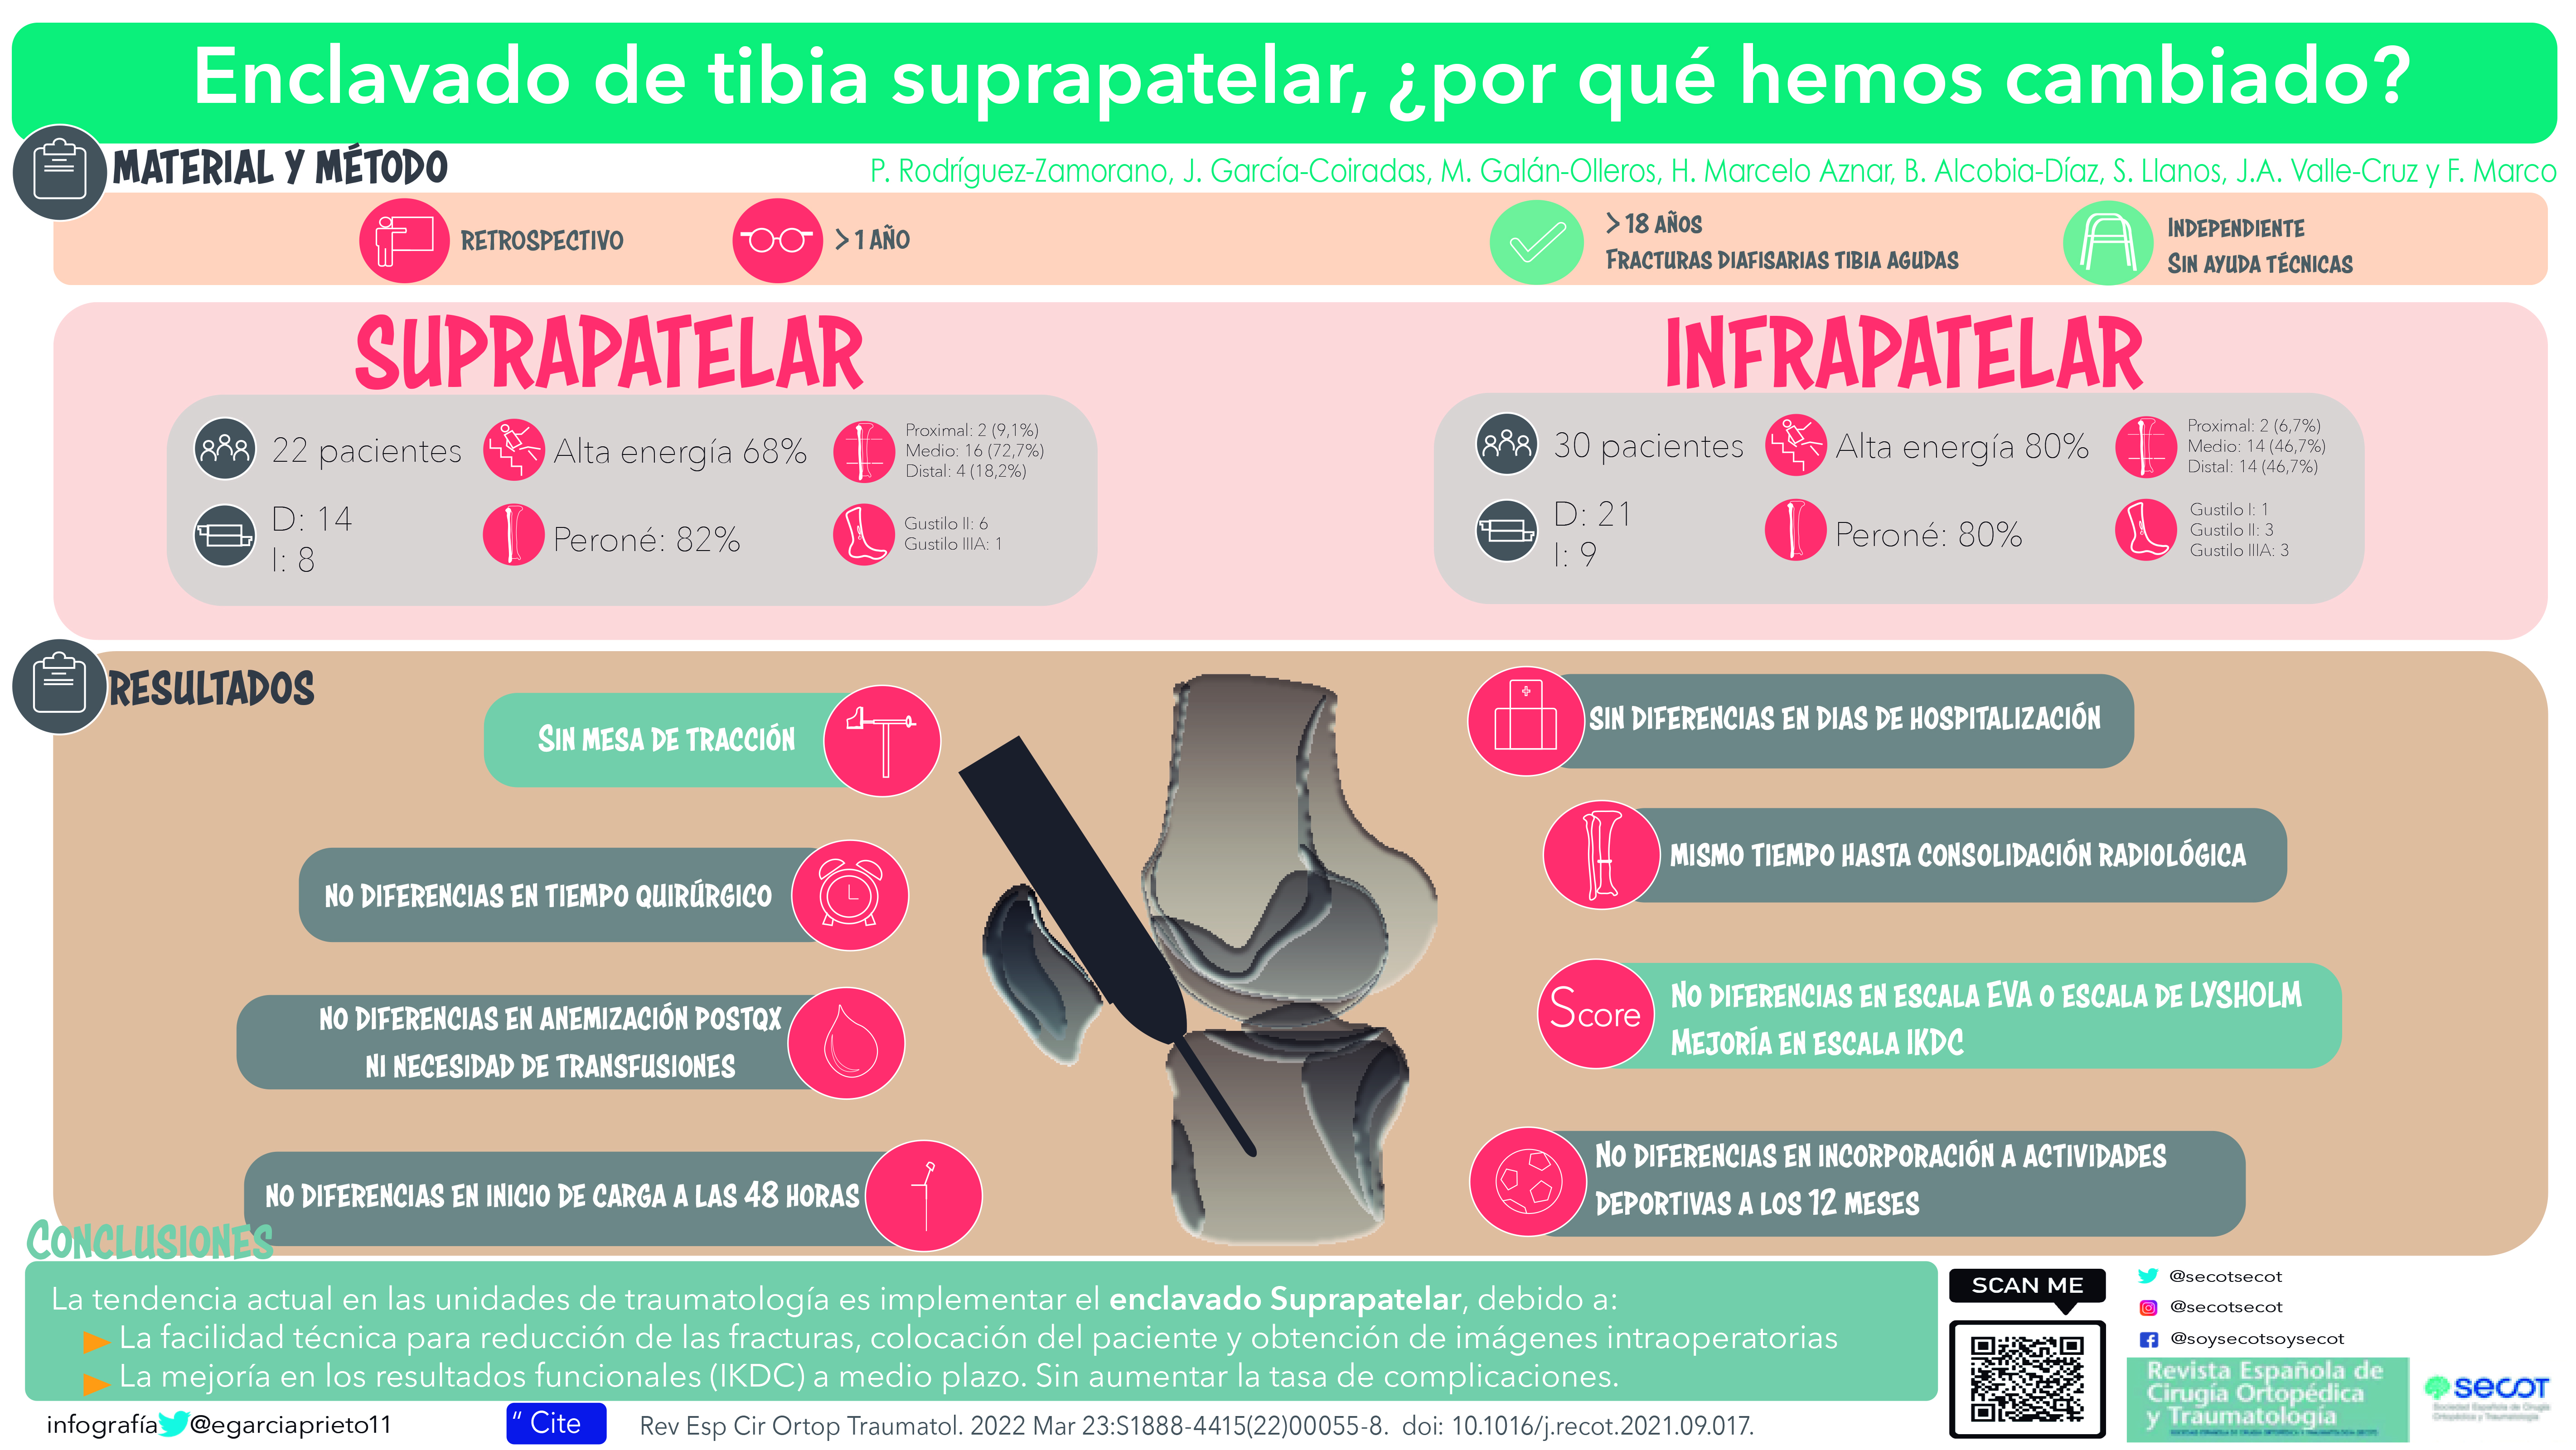 Enclavado de tibia suprapatelar, ¿por qué hemos cambiado? | Revista Española de Cirugía Ortopédica y Traumatología (elsevier.es)